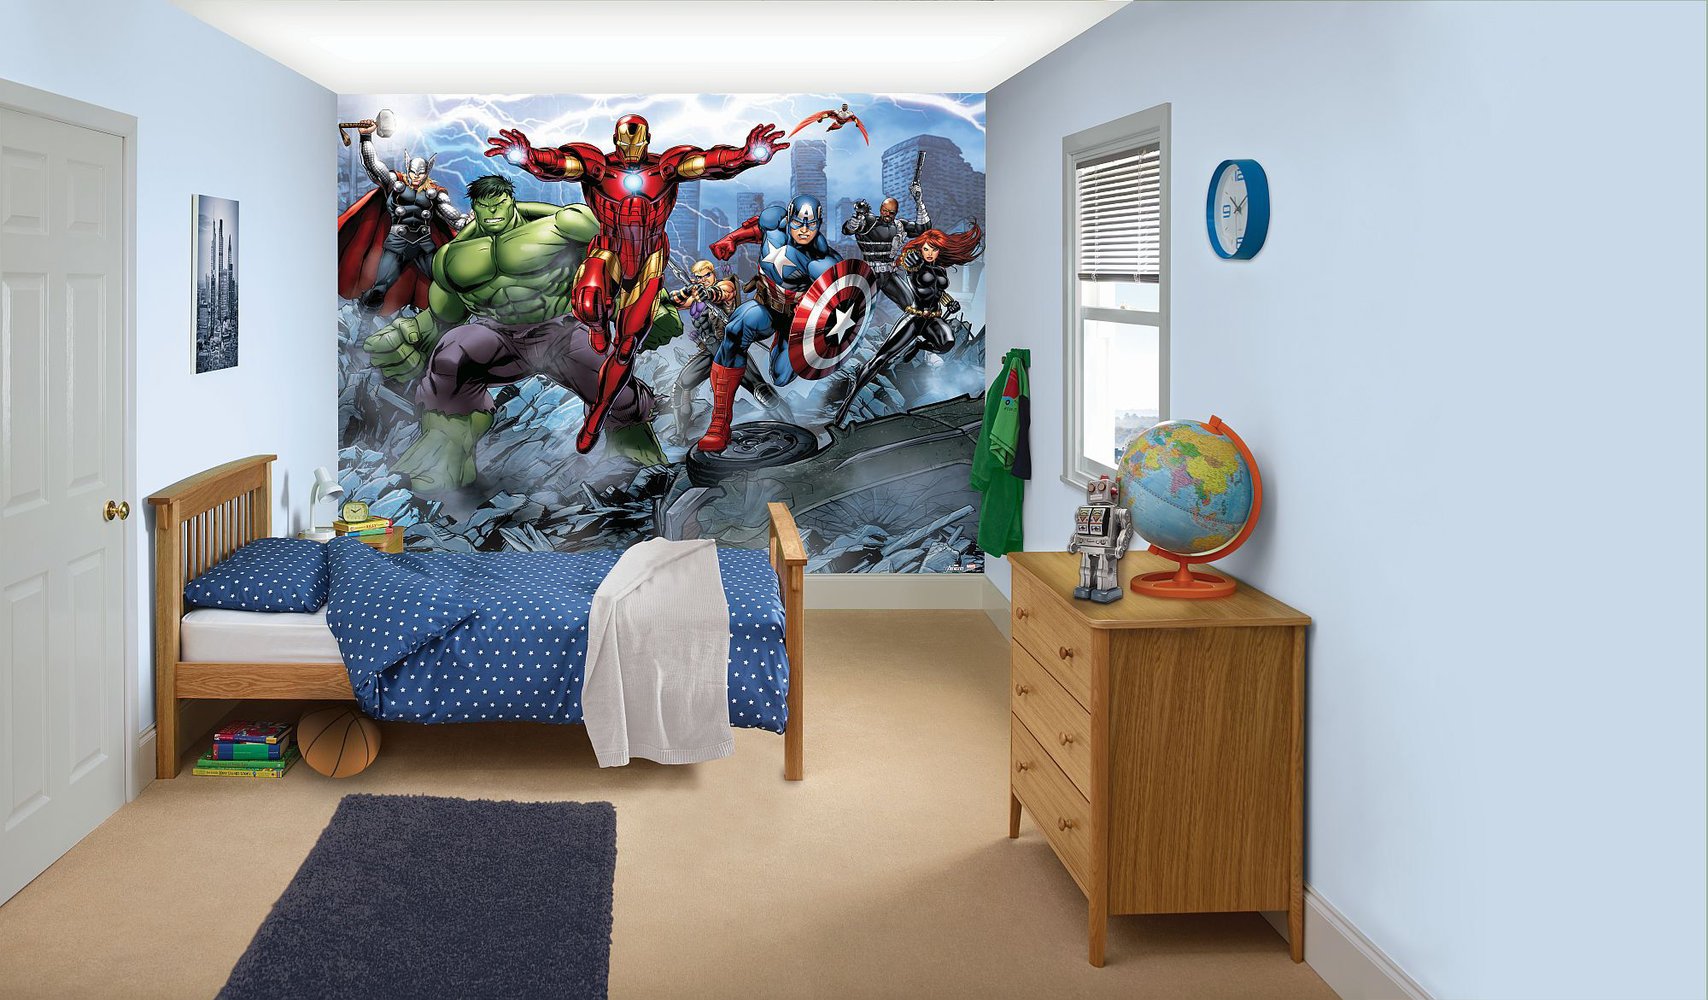 Детская комната Мстители. Комната в стиле Марвел для мальчика. Интерьер детской в стиле Мстителей. Детская комната Марвел. Box bedroom